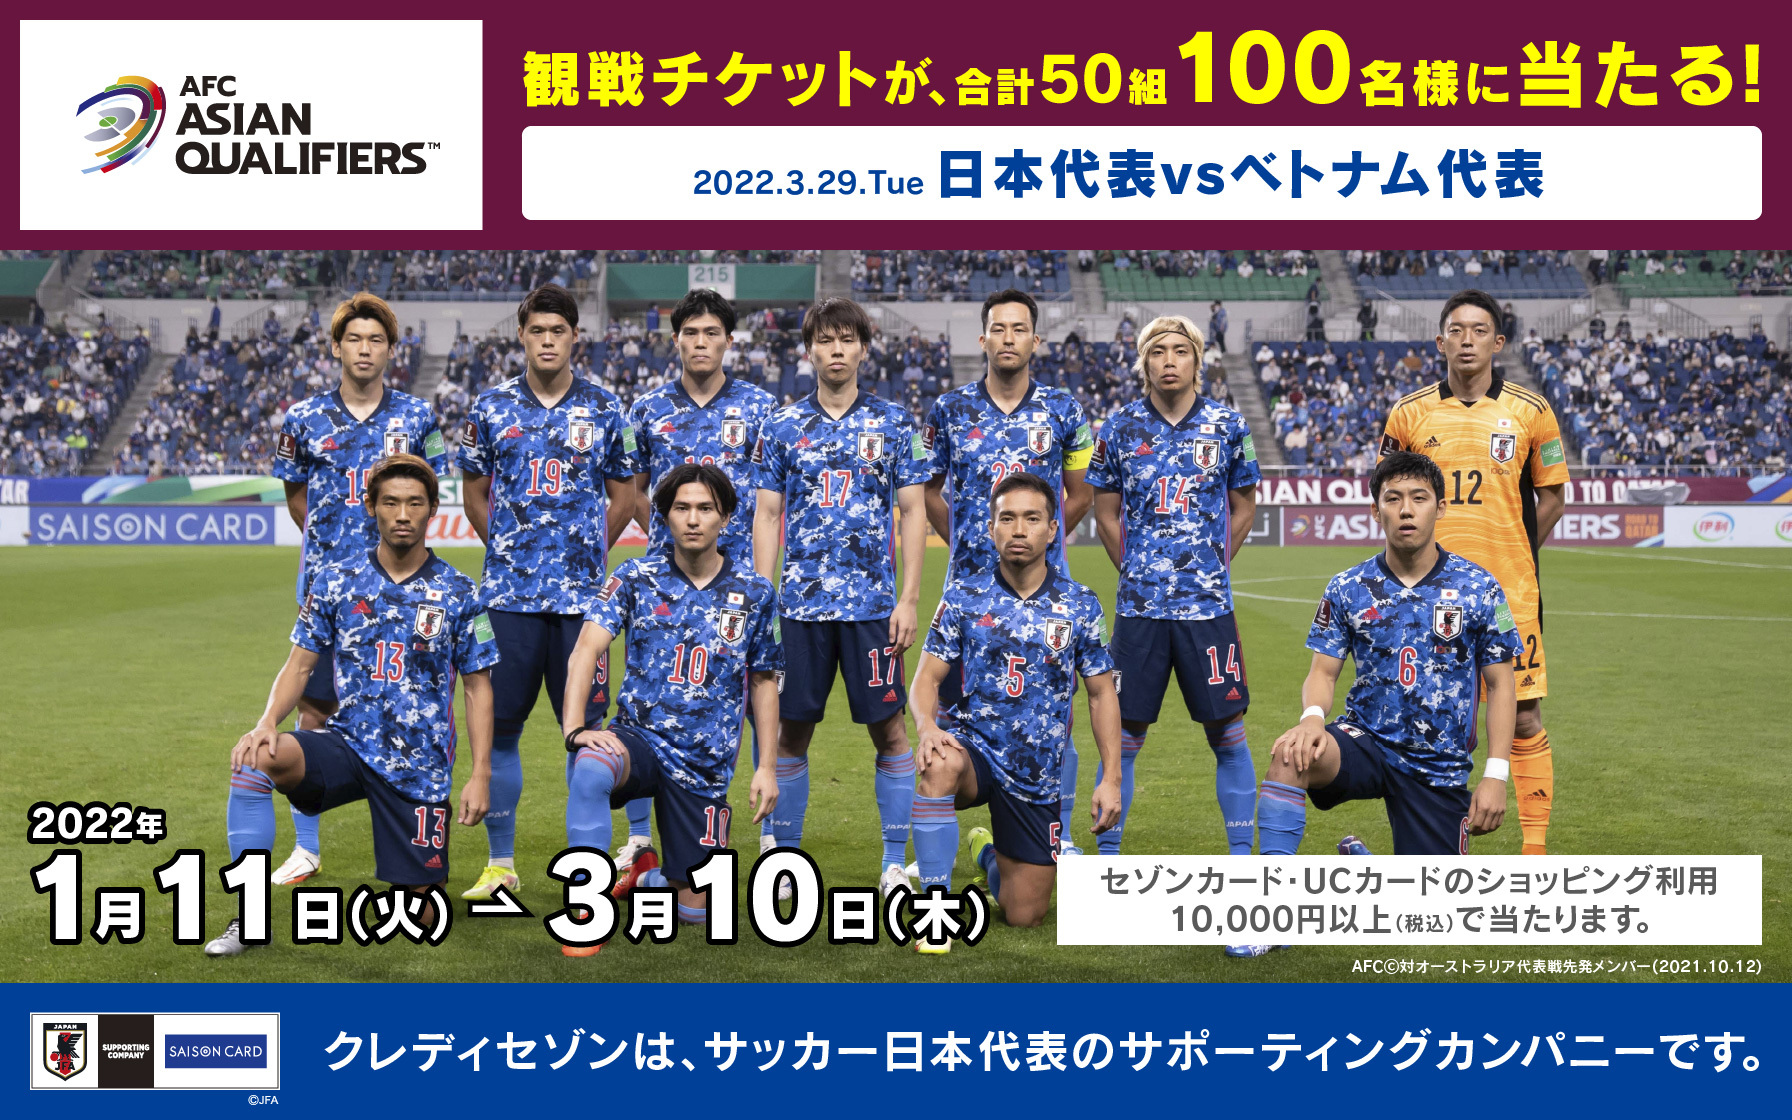 エントリー終了 50組100名様にチケット当たる サッカー日本代表応援キャンペーン プレゼント キャンペーン情報 クレジットカードはucカード